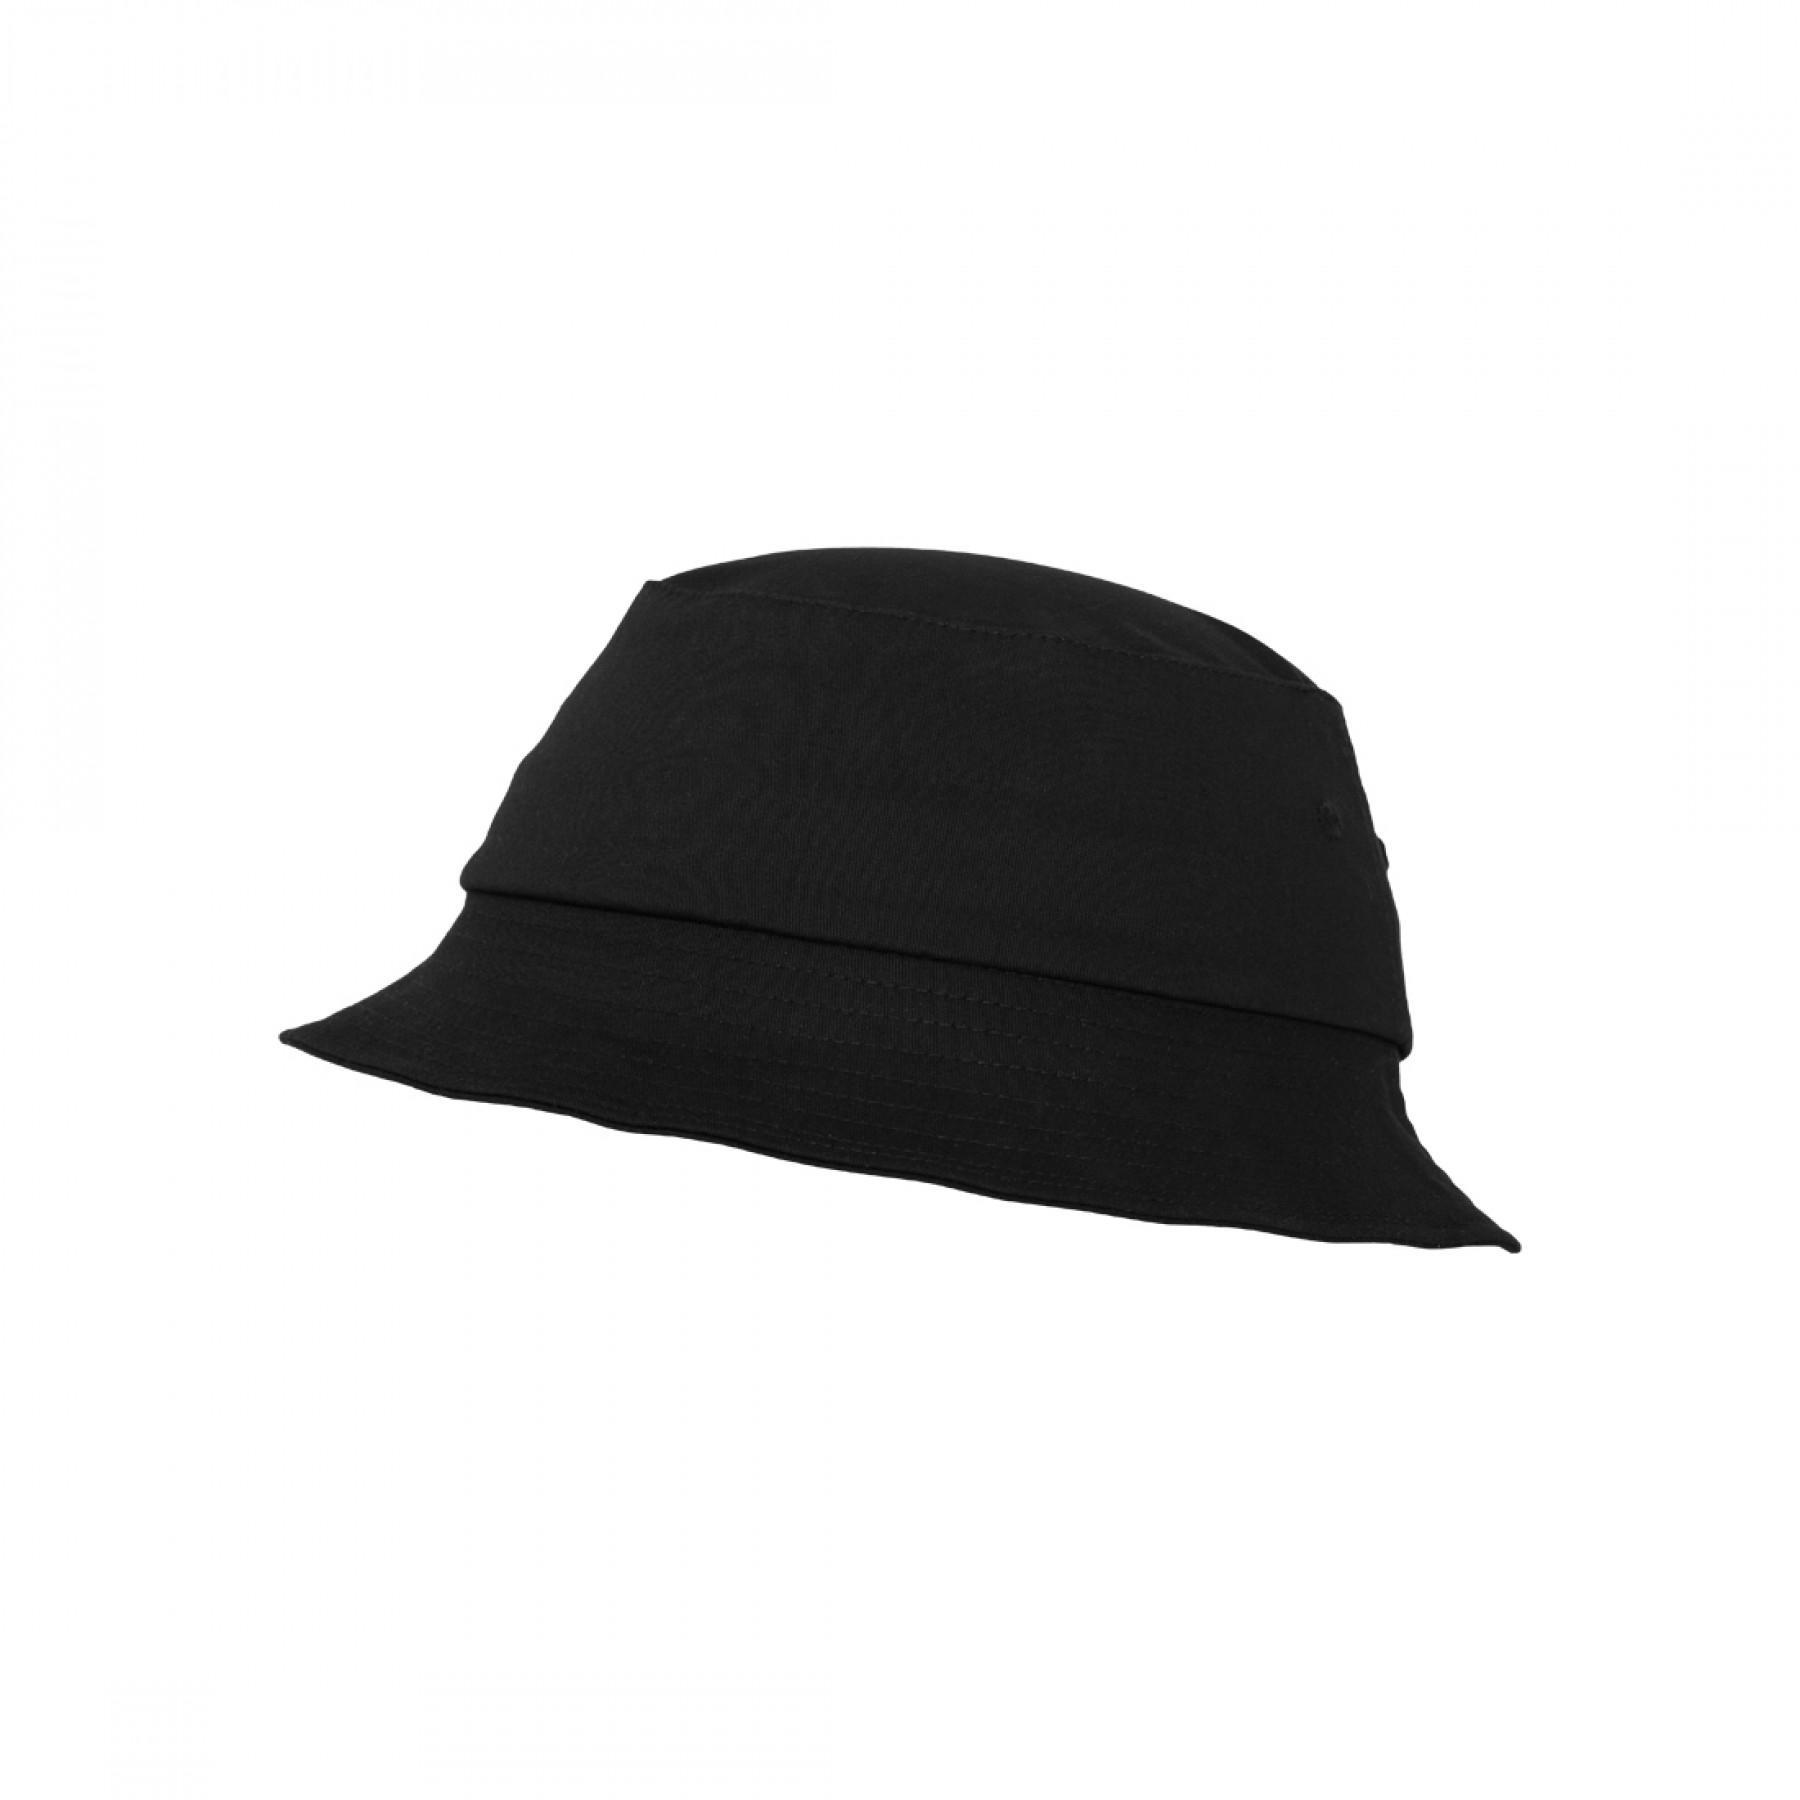 Hat Flexfit cotton twill